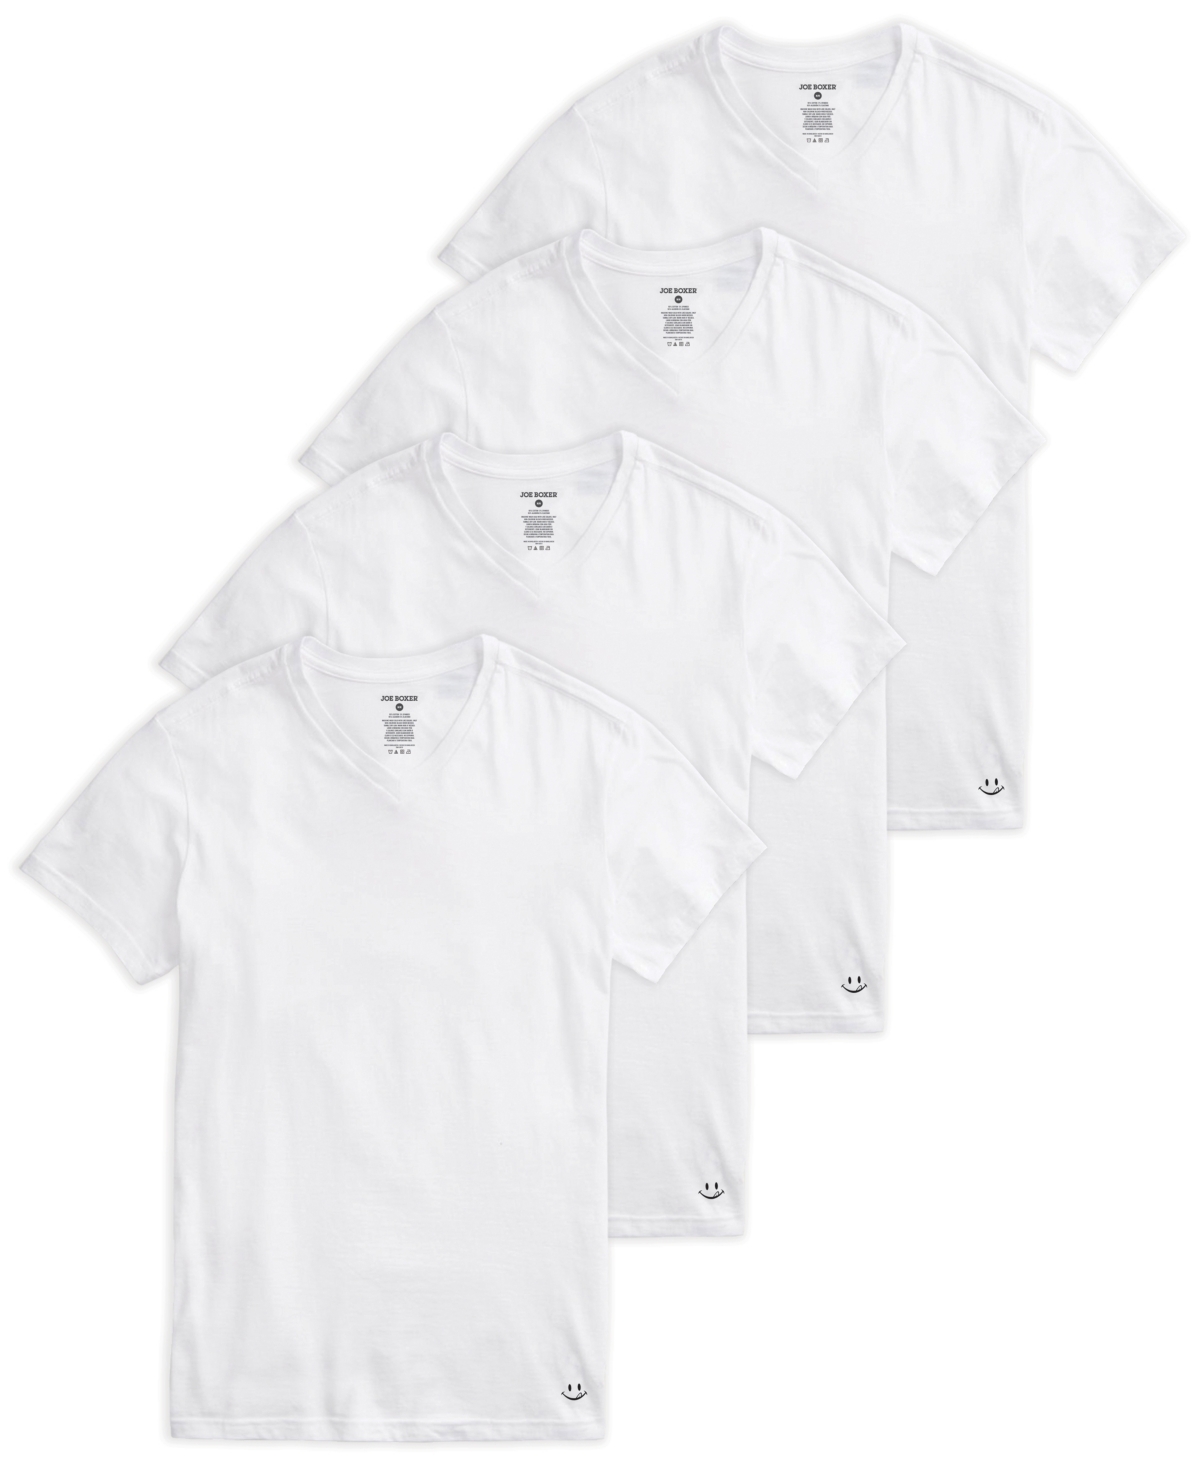 Men's V-Neck T-shirt, Pack of 4 - White